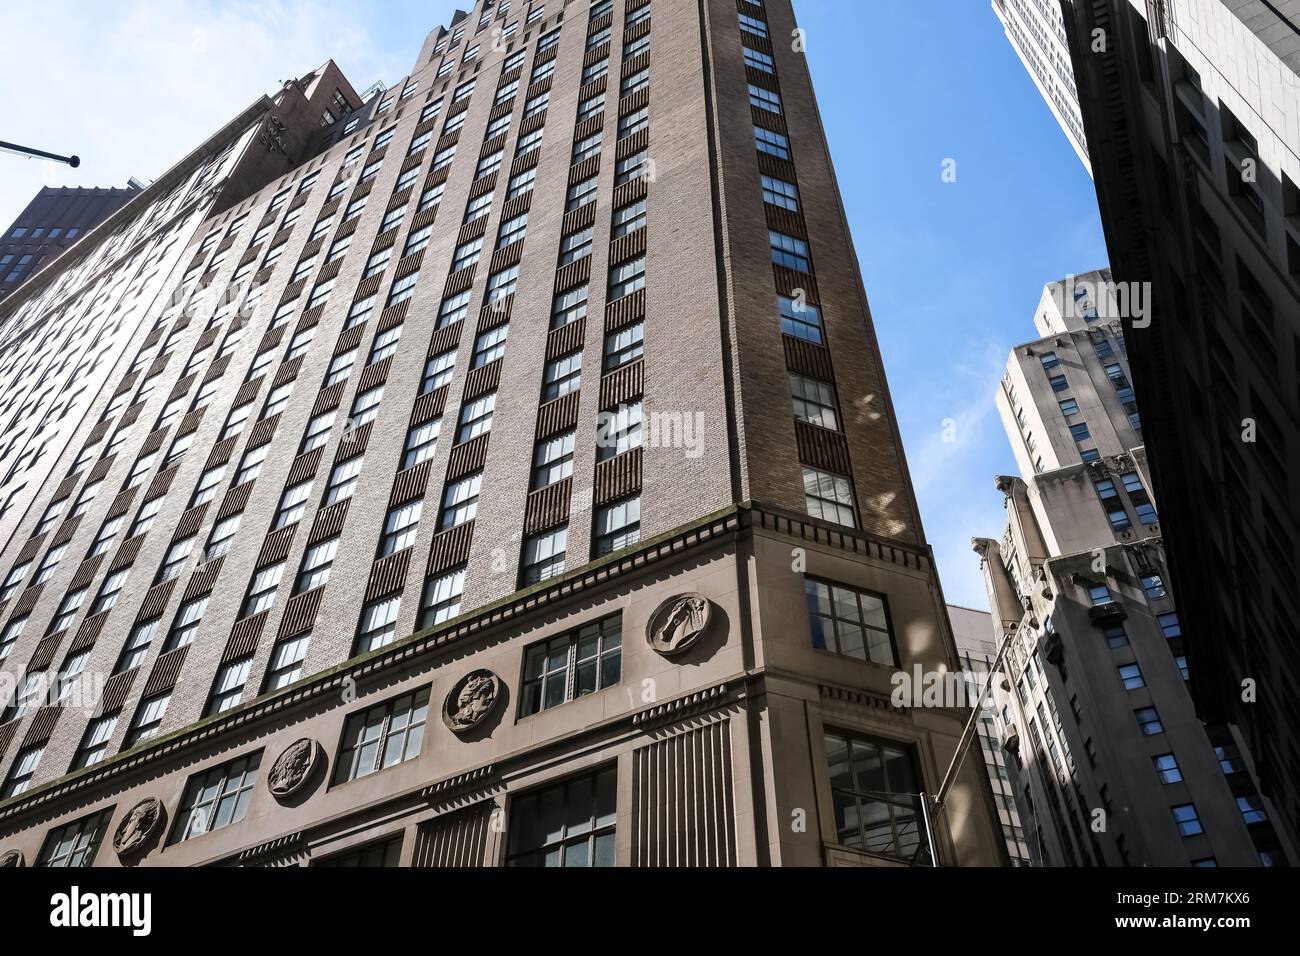 Détail architectural de l'intersection de Hanover Street et Wall Street dans le quartier financier de Lower Manhattan à New York, États-Unis Banque D'Images